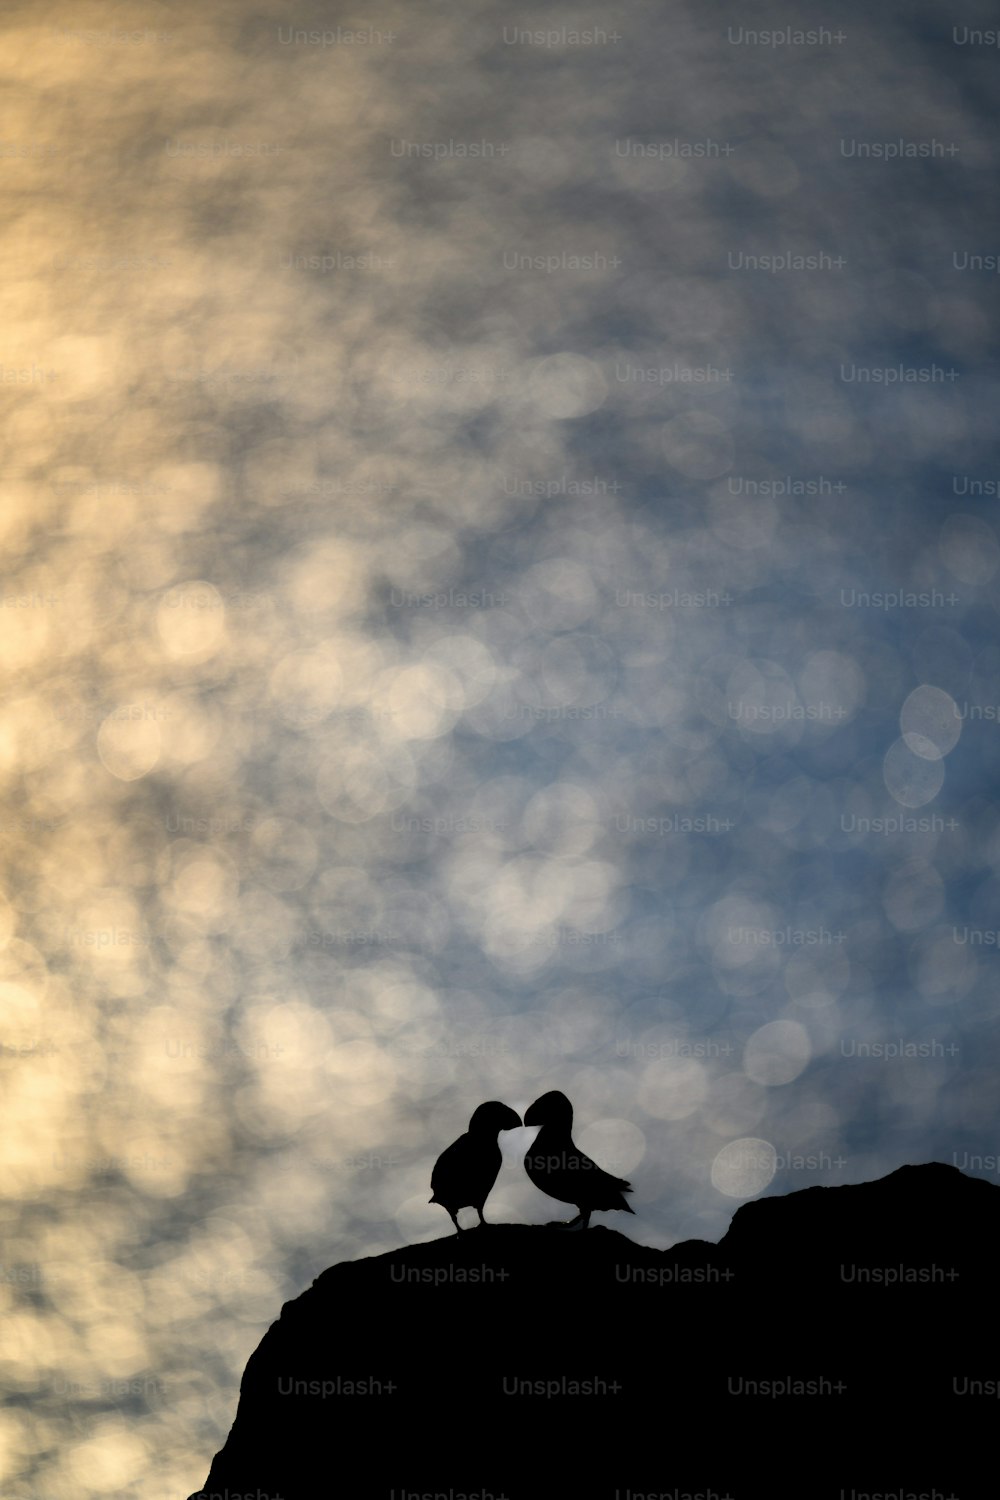 언덕 꼭대기에 앉아 있는 두 마리의 새